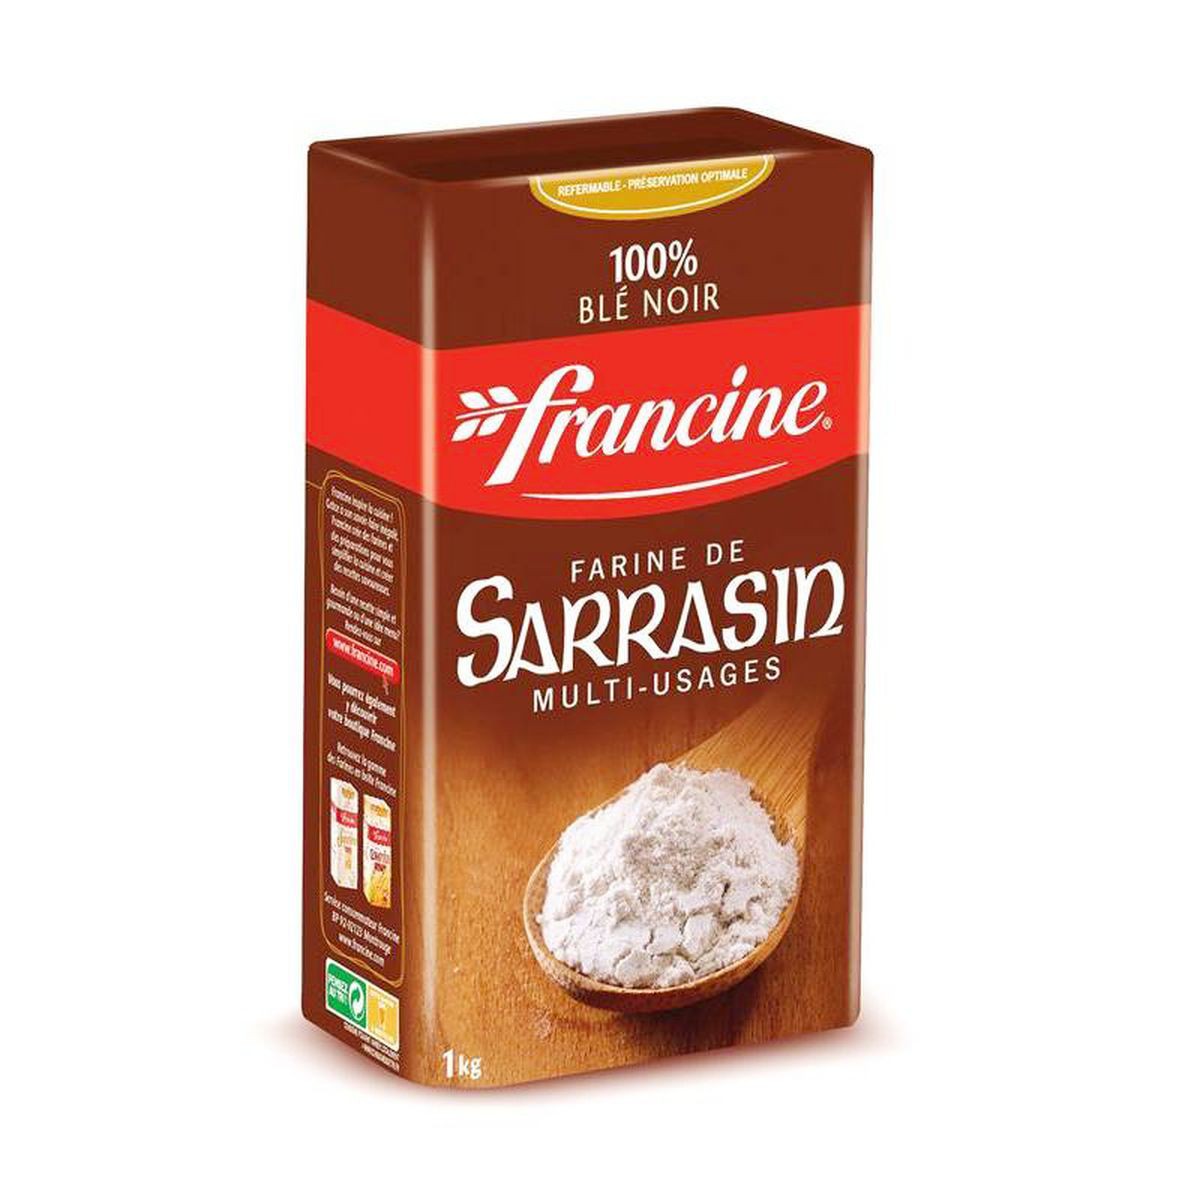 FRANCINE Farine de sarrasin 100% blé noir multi-usages 1kg pas